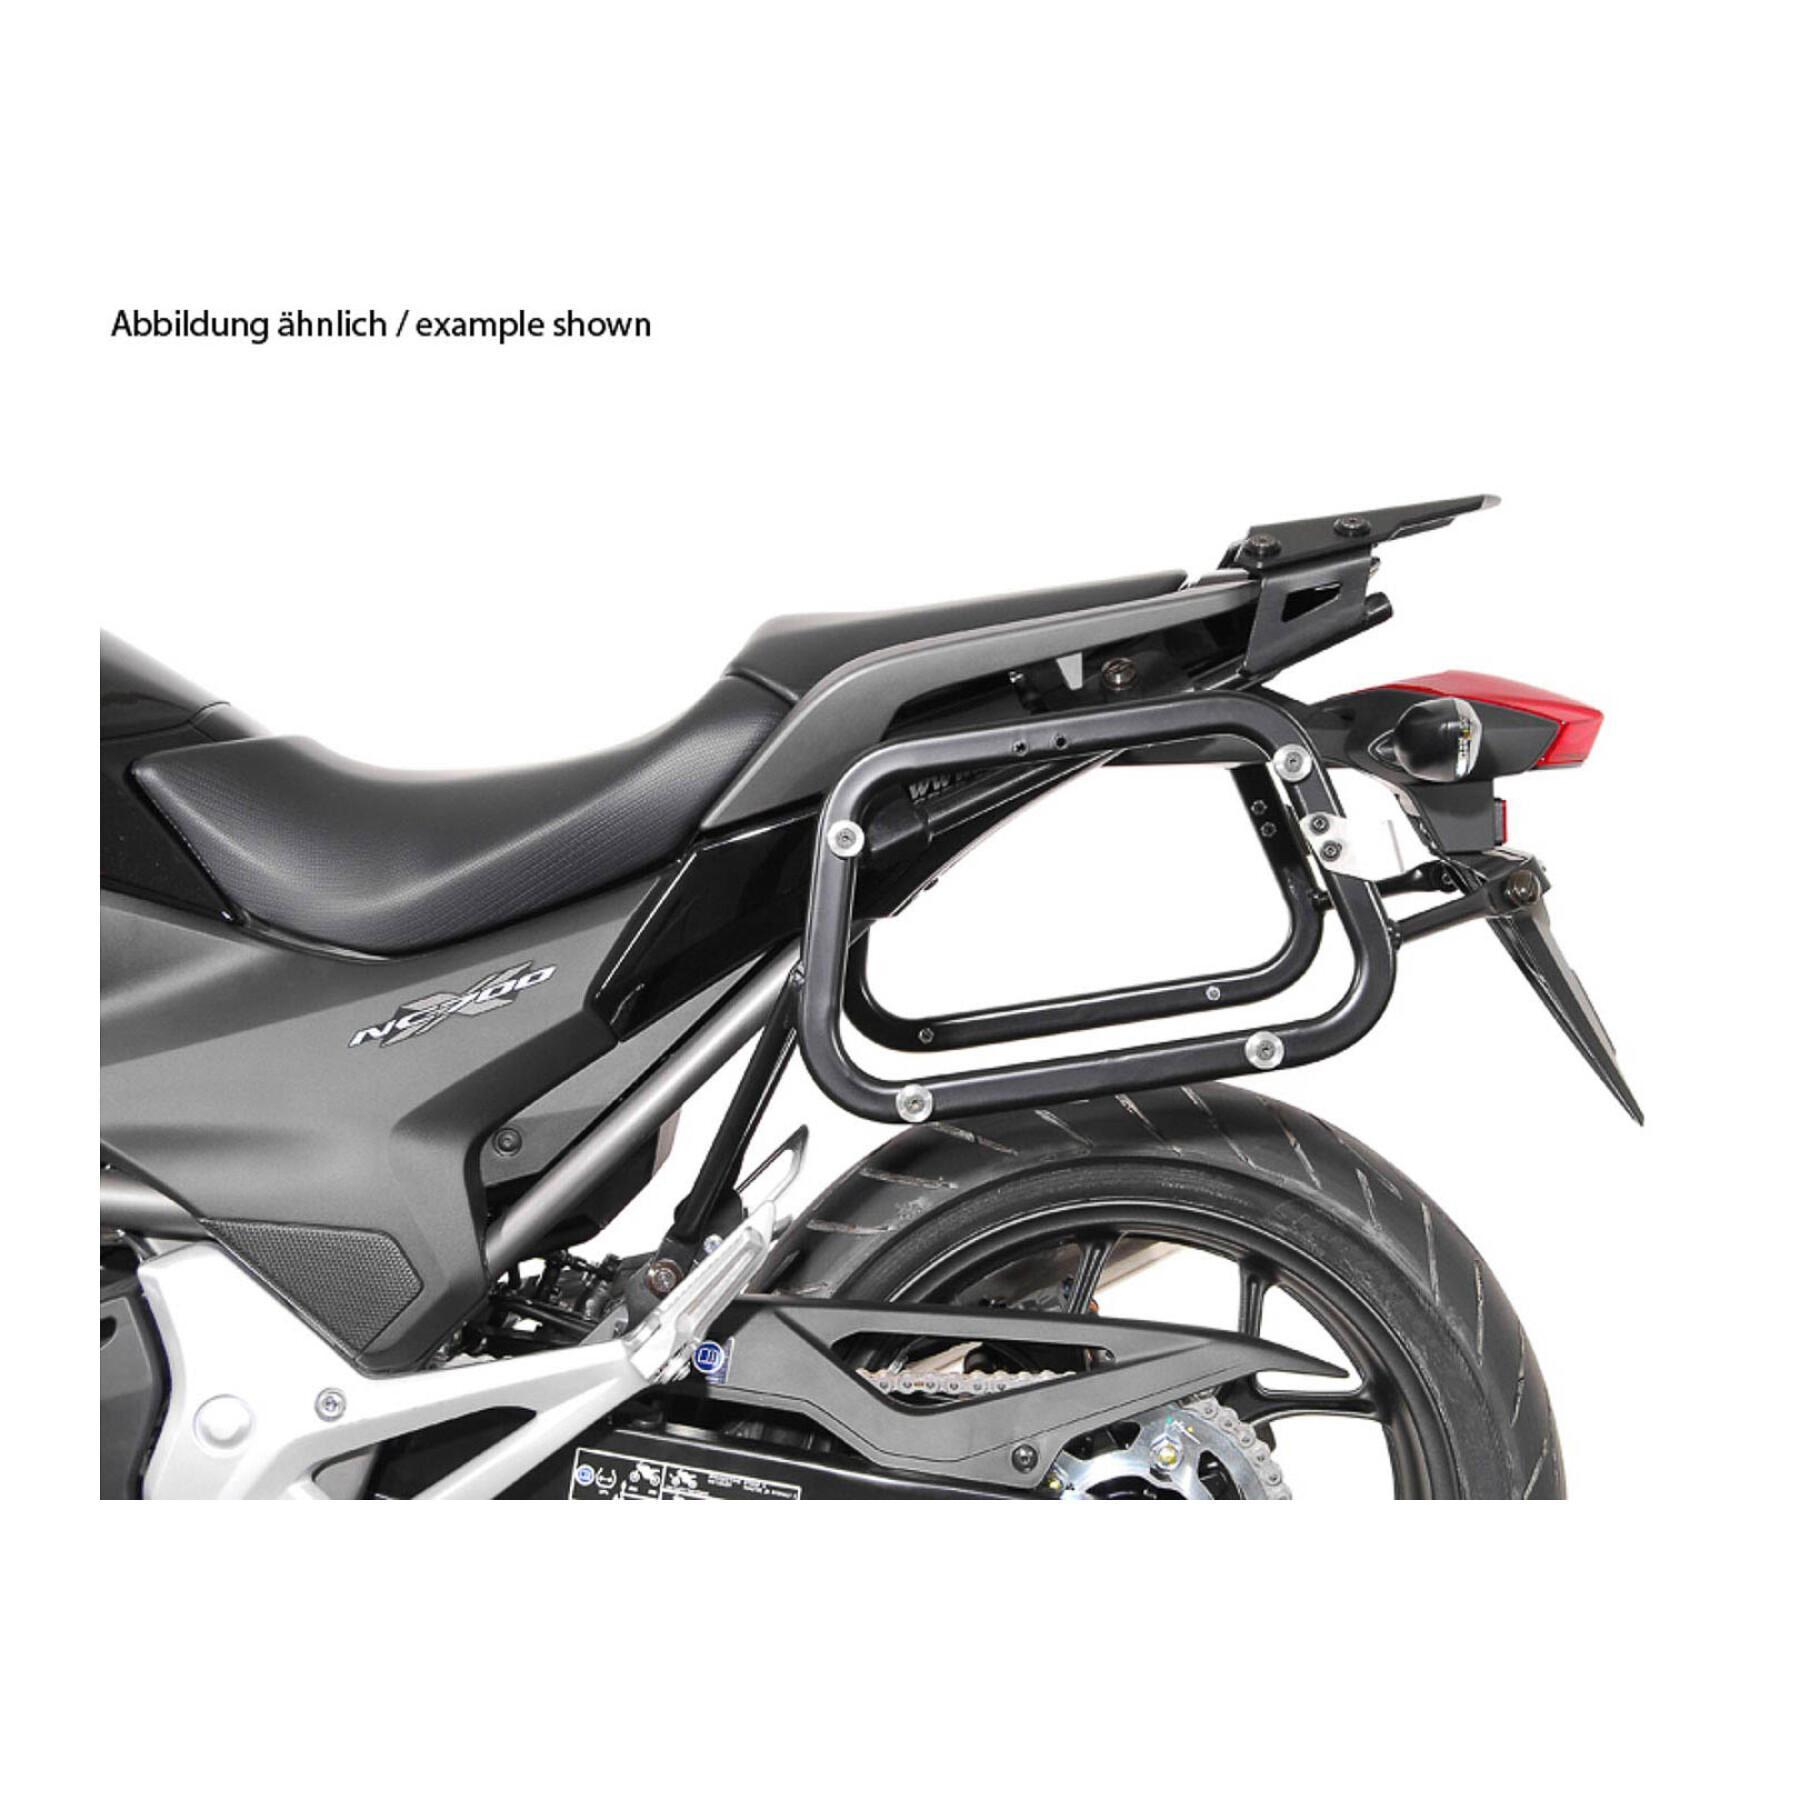 Soporte de la maleta lateral de la moto Sw-Motech Evo. Honda Nc700S/X (11-14),Nc750S/X (14-15)